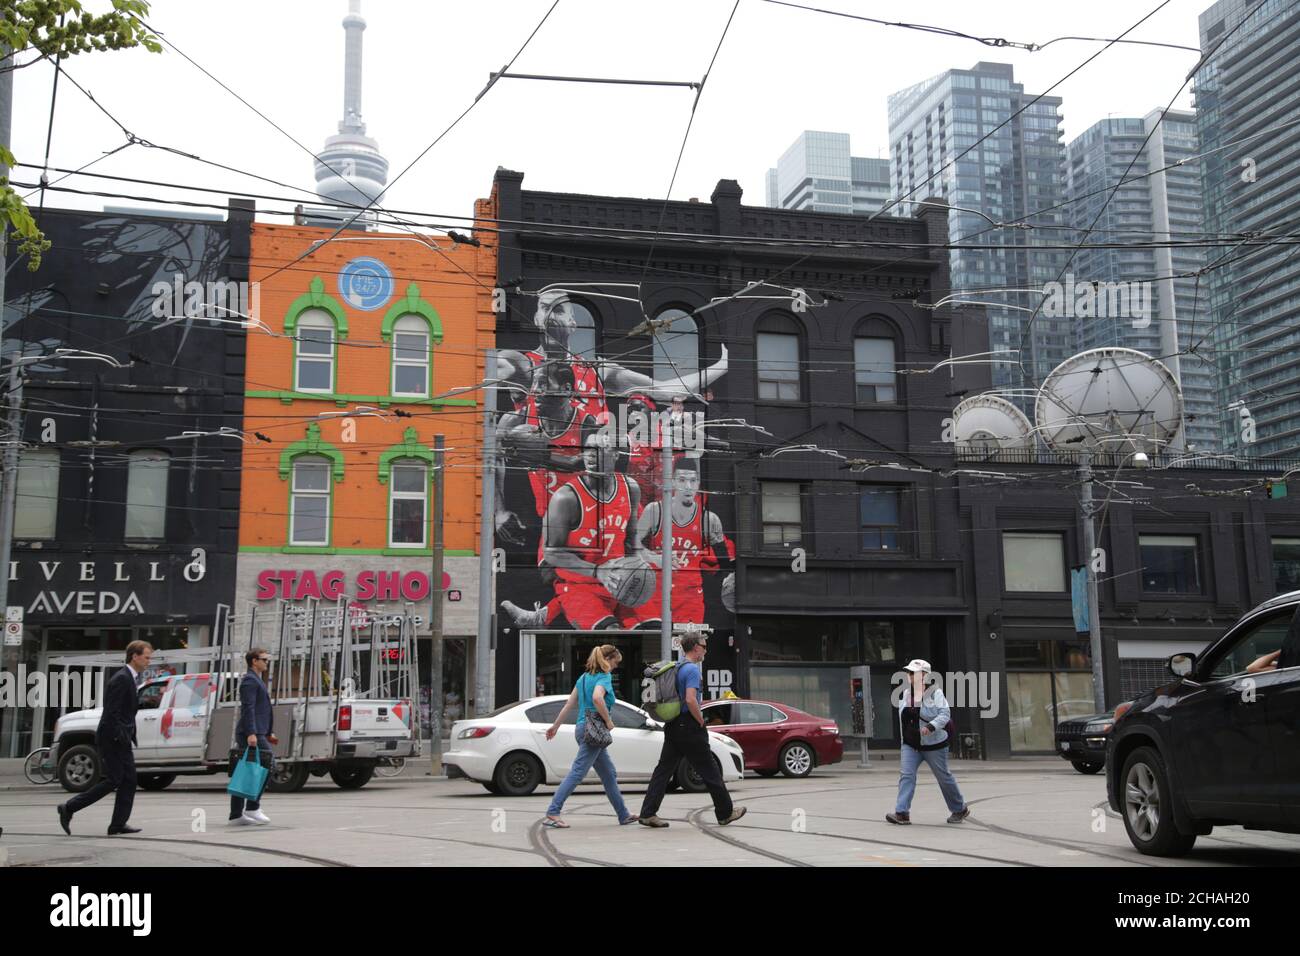 Les gens traversent la rue près d'une fresque représentant les joueurs des  Raptors de Toronto, avant la première finale de la NBA, match de  basket-ball contre les Golden State Warriors à Toronto,